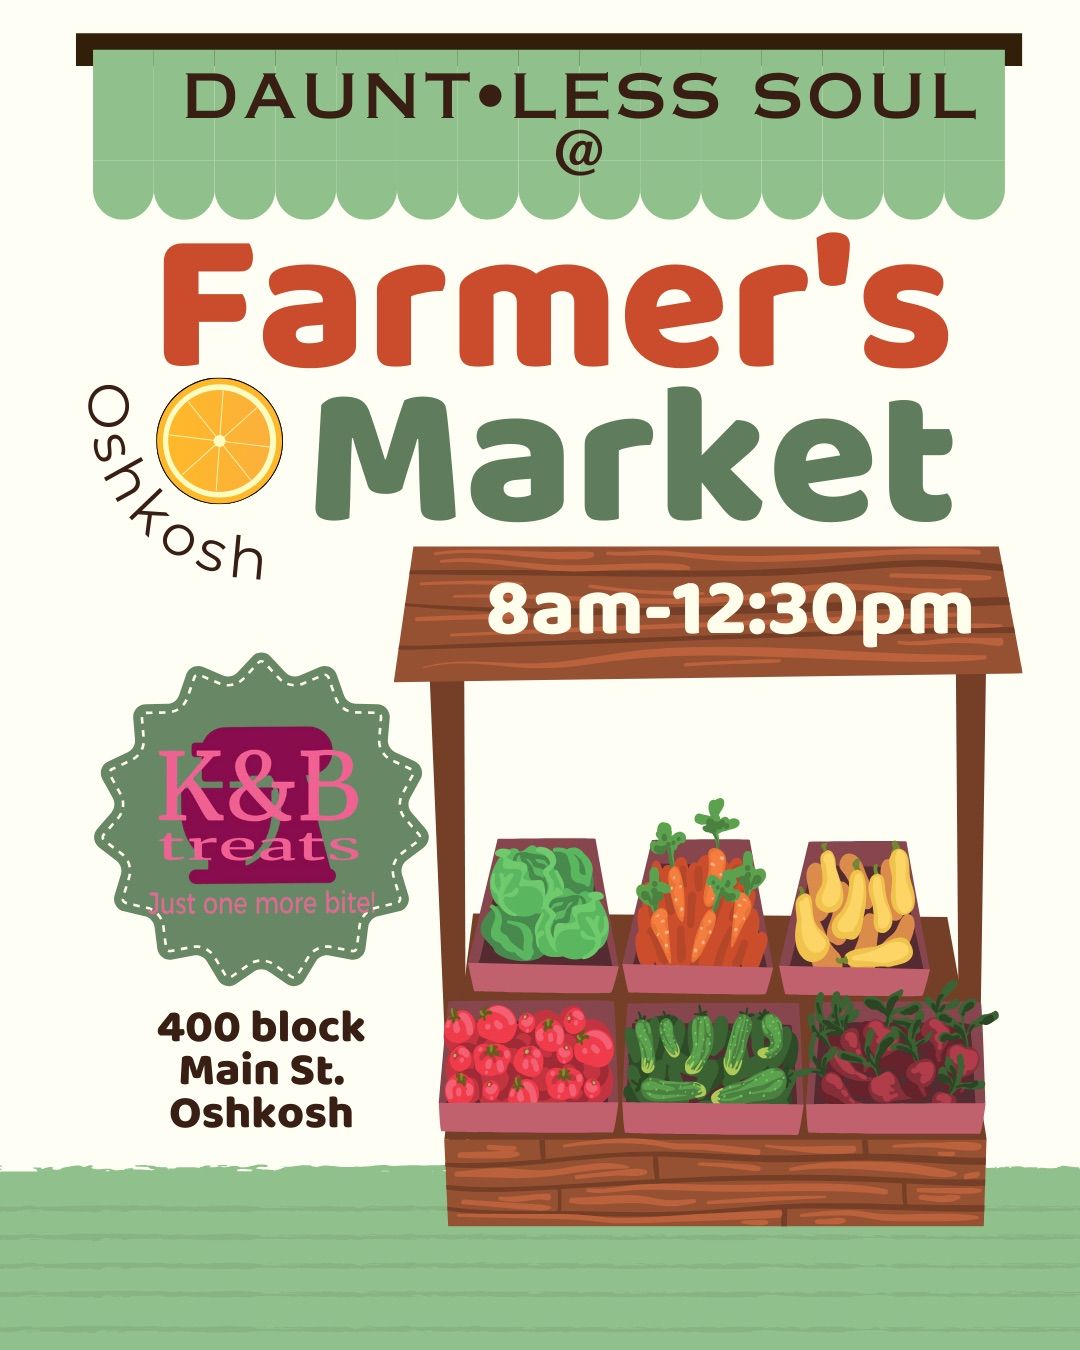 Dauntless @ Oshkosh Farmers Market